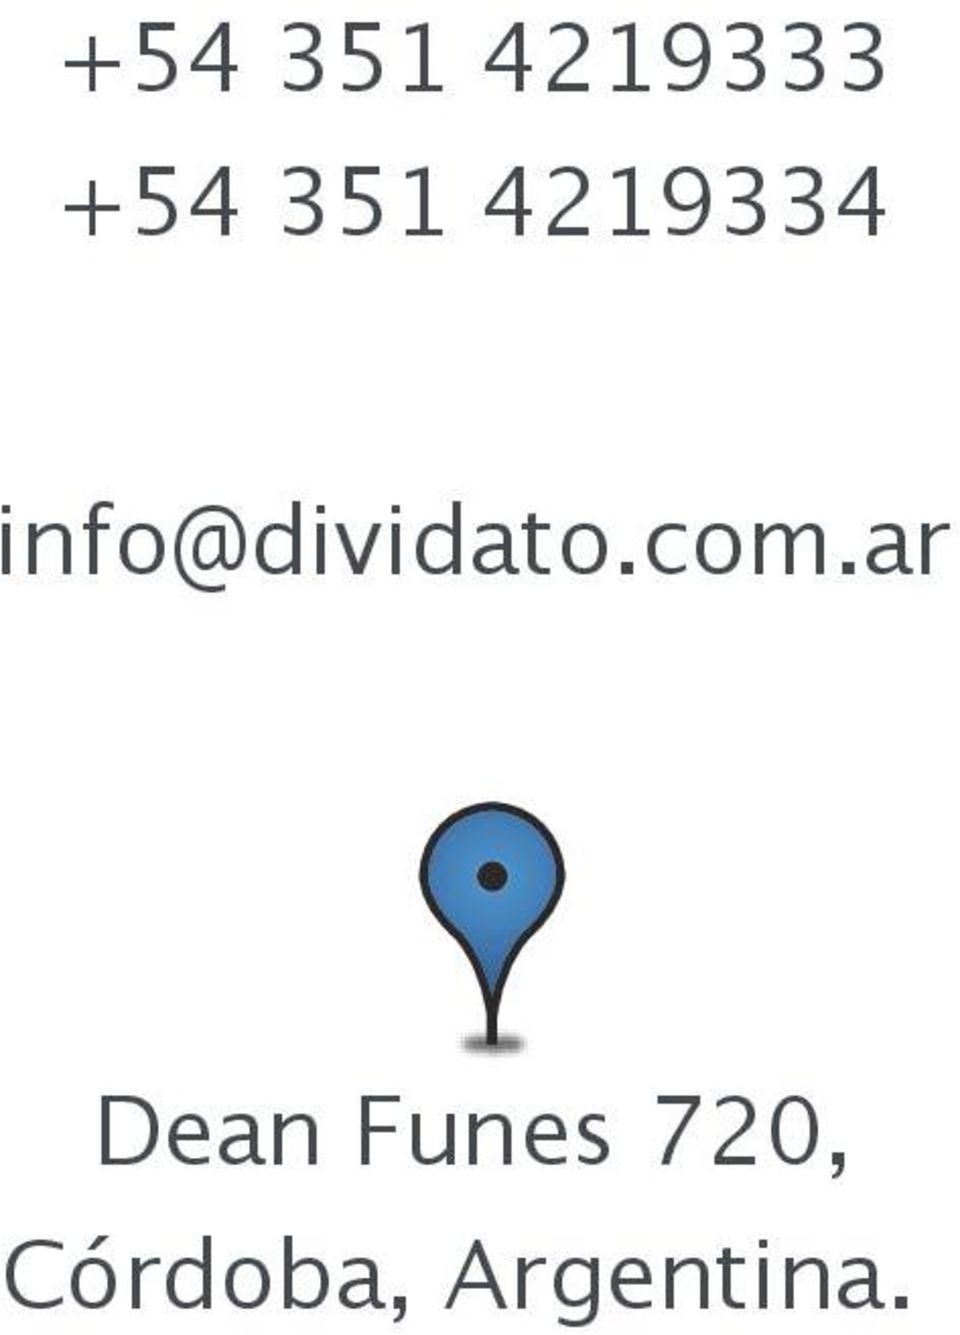 info@dividato.com.